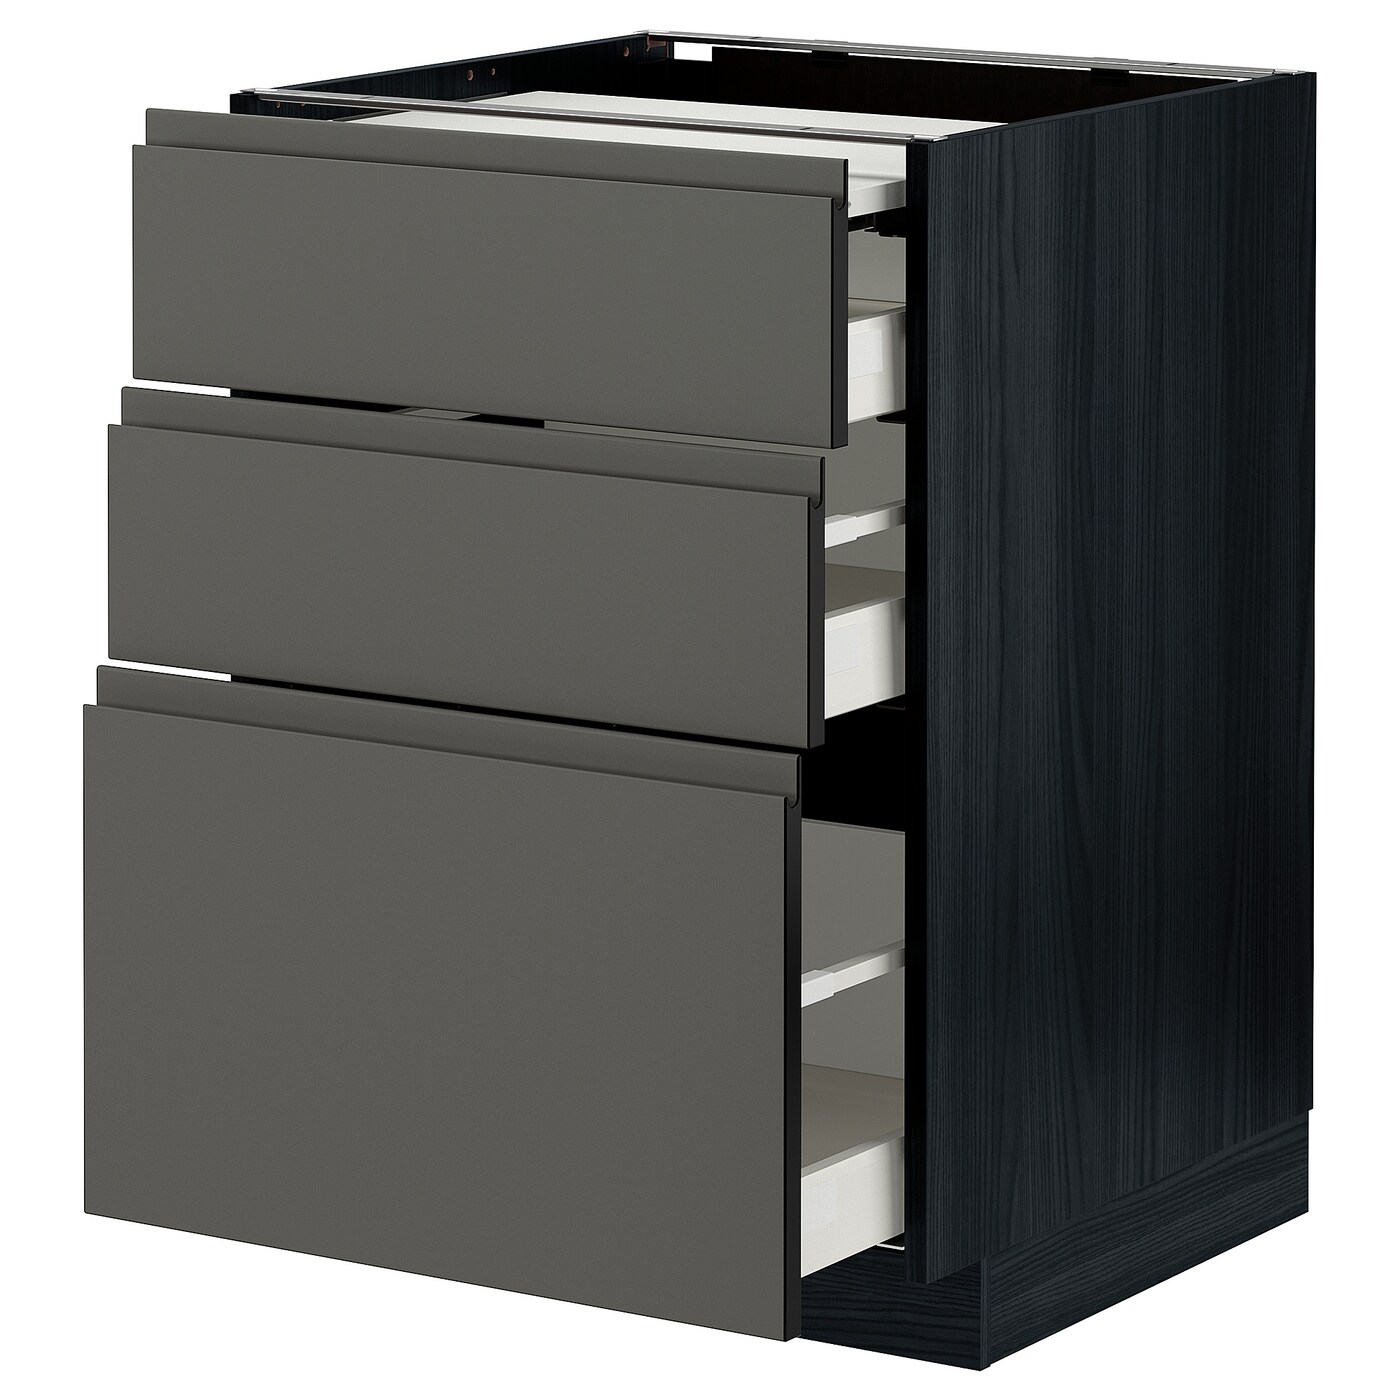 Напольный шкаф - IKEA METOD MAXIMERA, 88x62x60см, черный/серый, МЕТОД МАКСИМЕРА ИКЕА